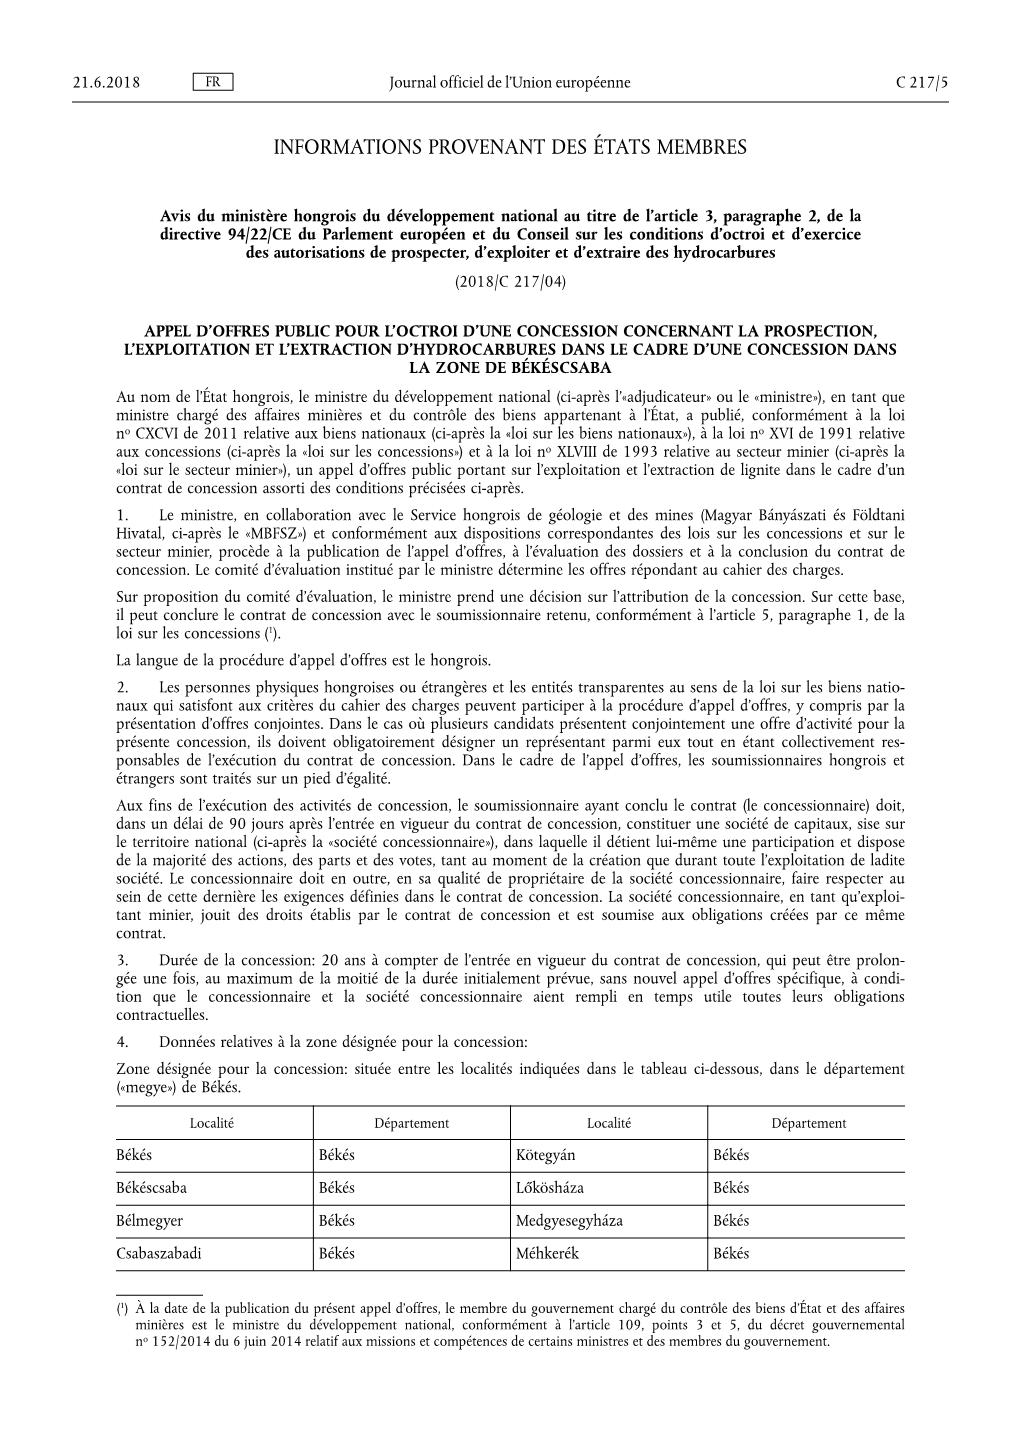 Avis Du Ministère Hongrois Du Développement National Au Titre De L'article 3, Paragraphe 2, De La Directive 94/22/CE Du Parl